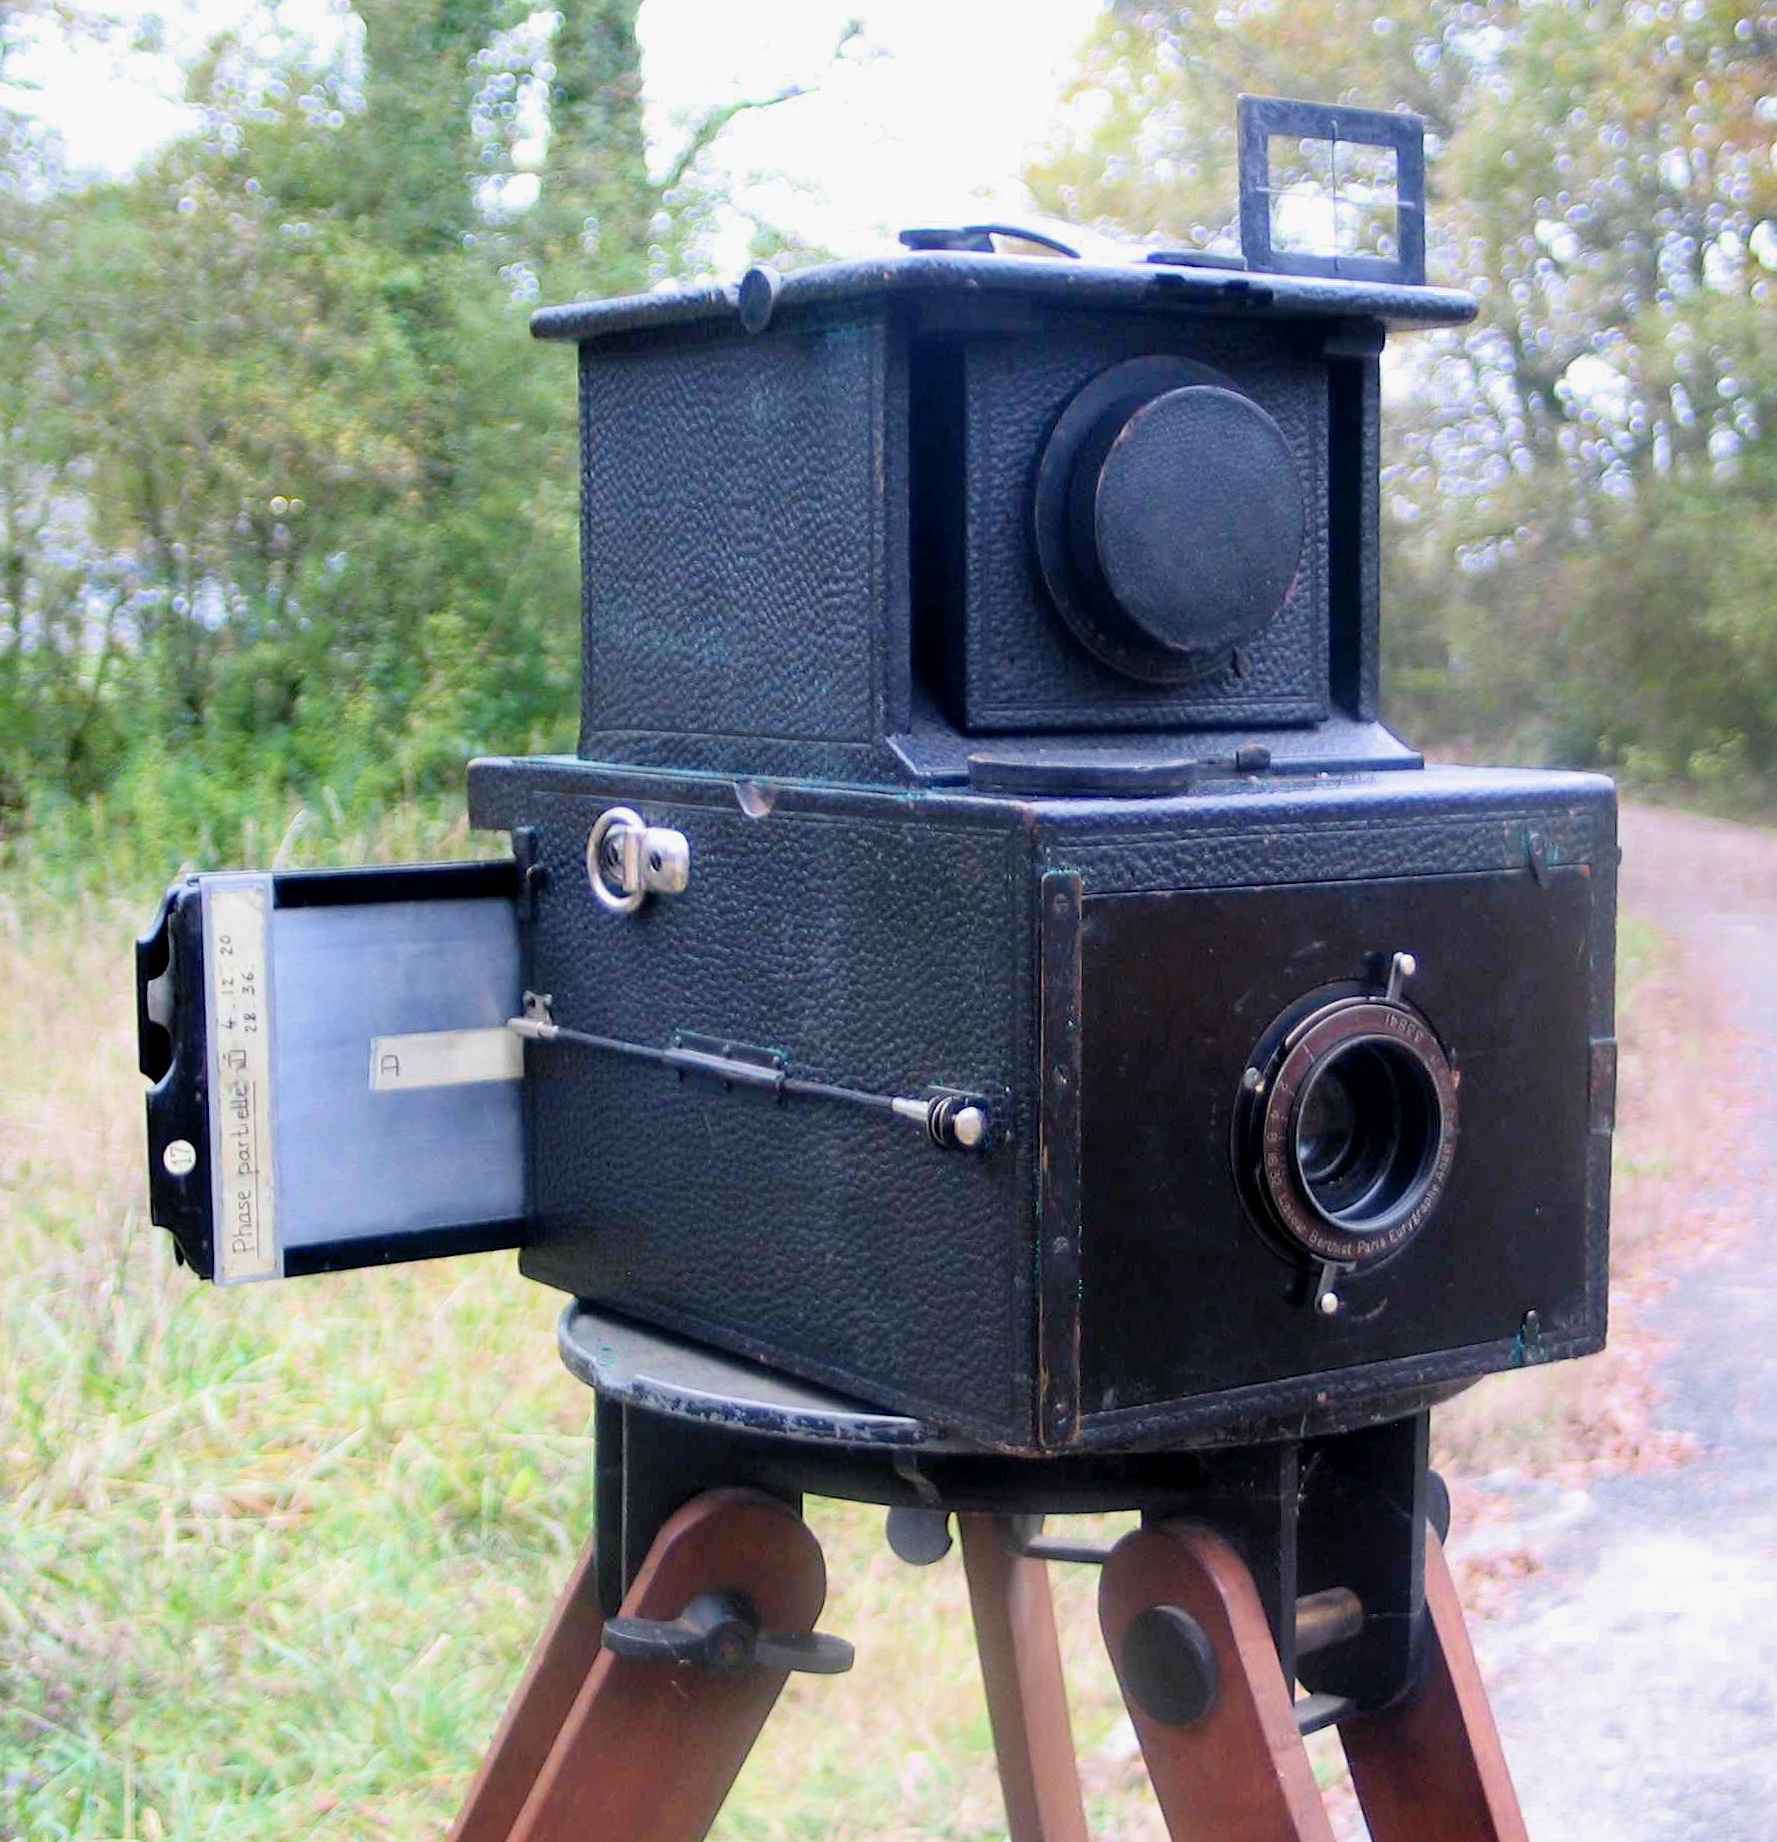 Appareil photographique réfracto-réflecteur à longue focale
(brevet Auguste Vautier)